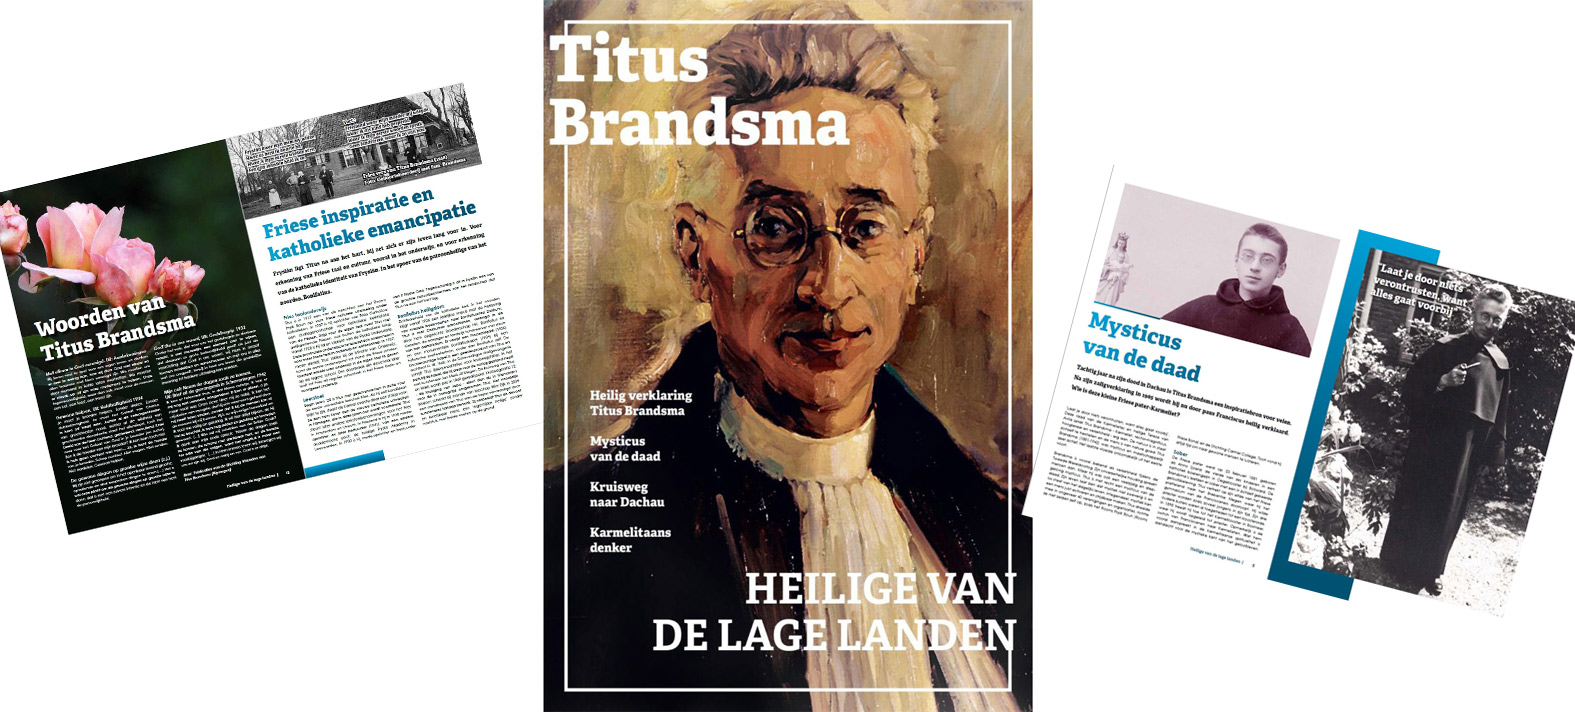 Titus Brandsma Magazine, een uitgave van de Karmelorde en de bisdommen in Nederland